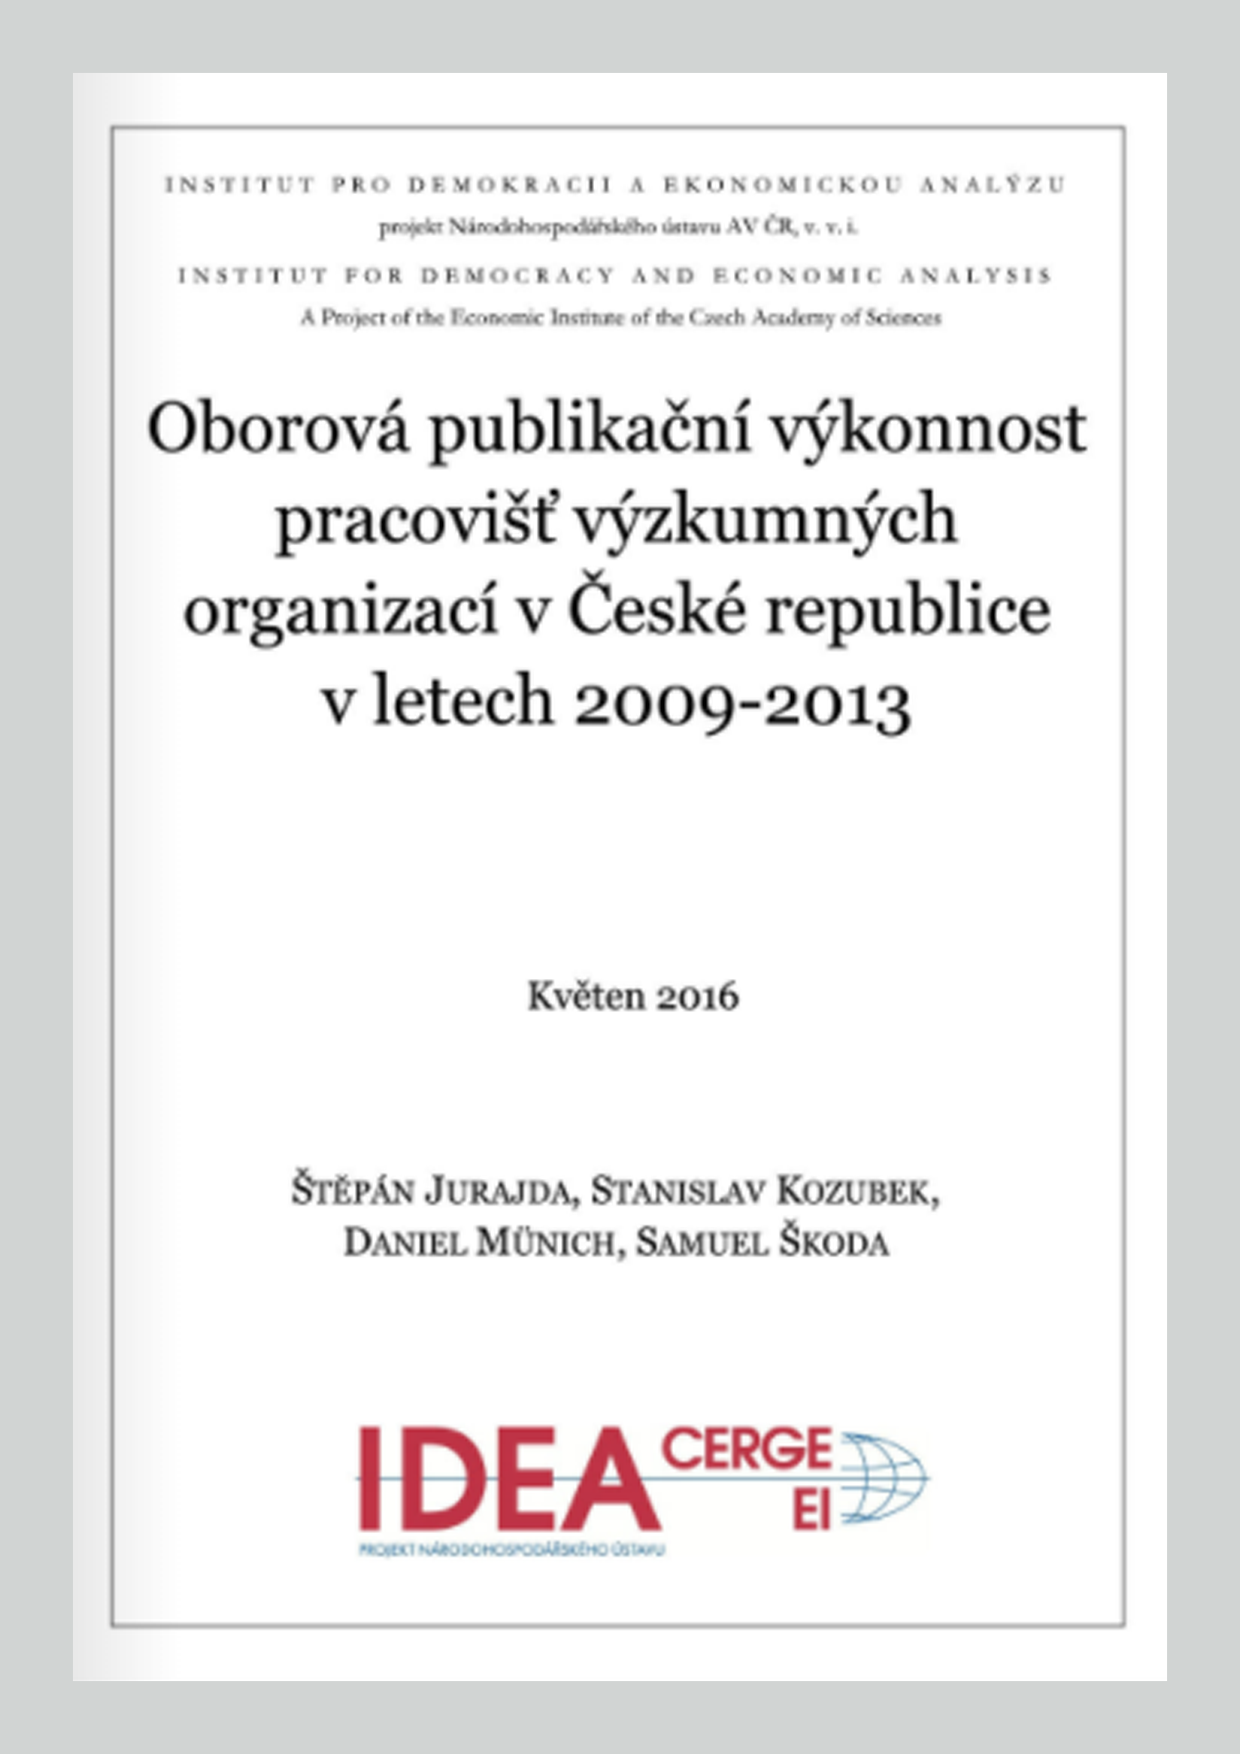 Oborová publikační výkonnost pracovišt výzkumných organizací v České republice v letech 2009-2013